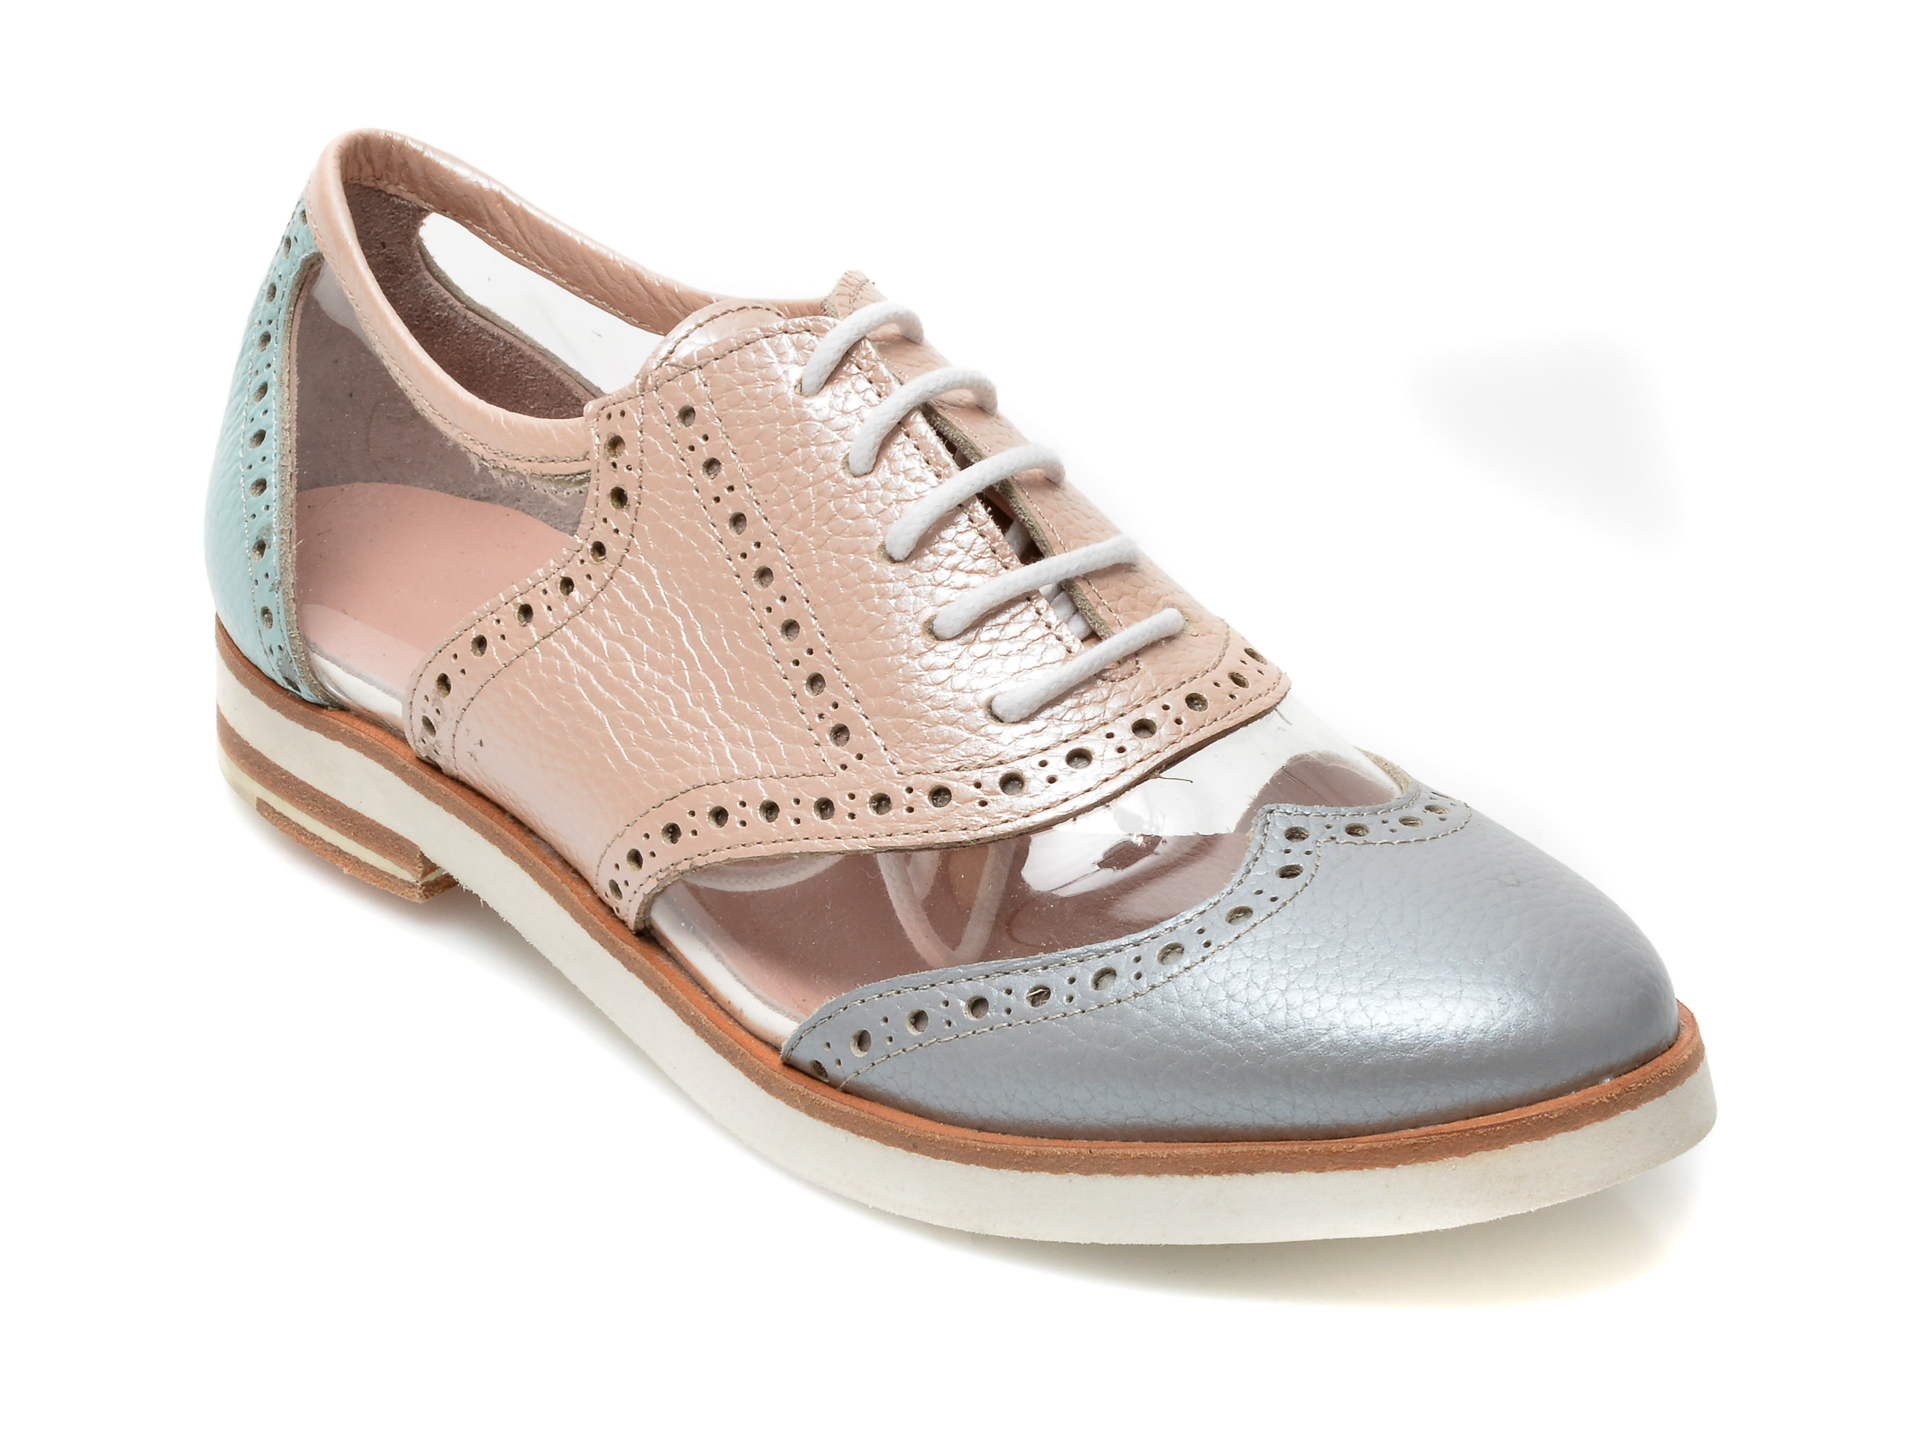 Pantofi LABOUR multicolori, 403, din piele naturala imagine reduceri black friday 2021 /femei/pantofi